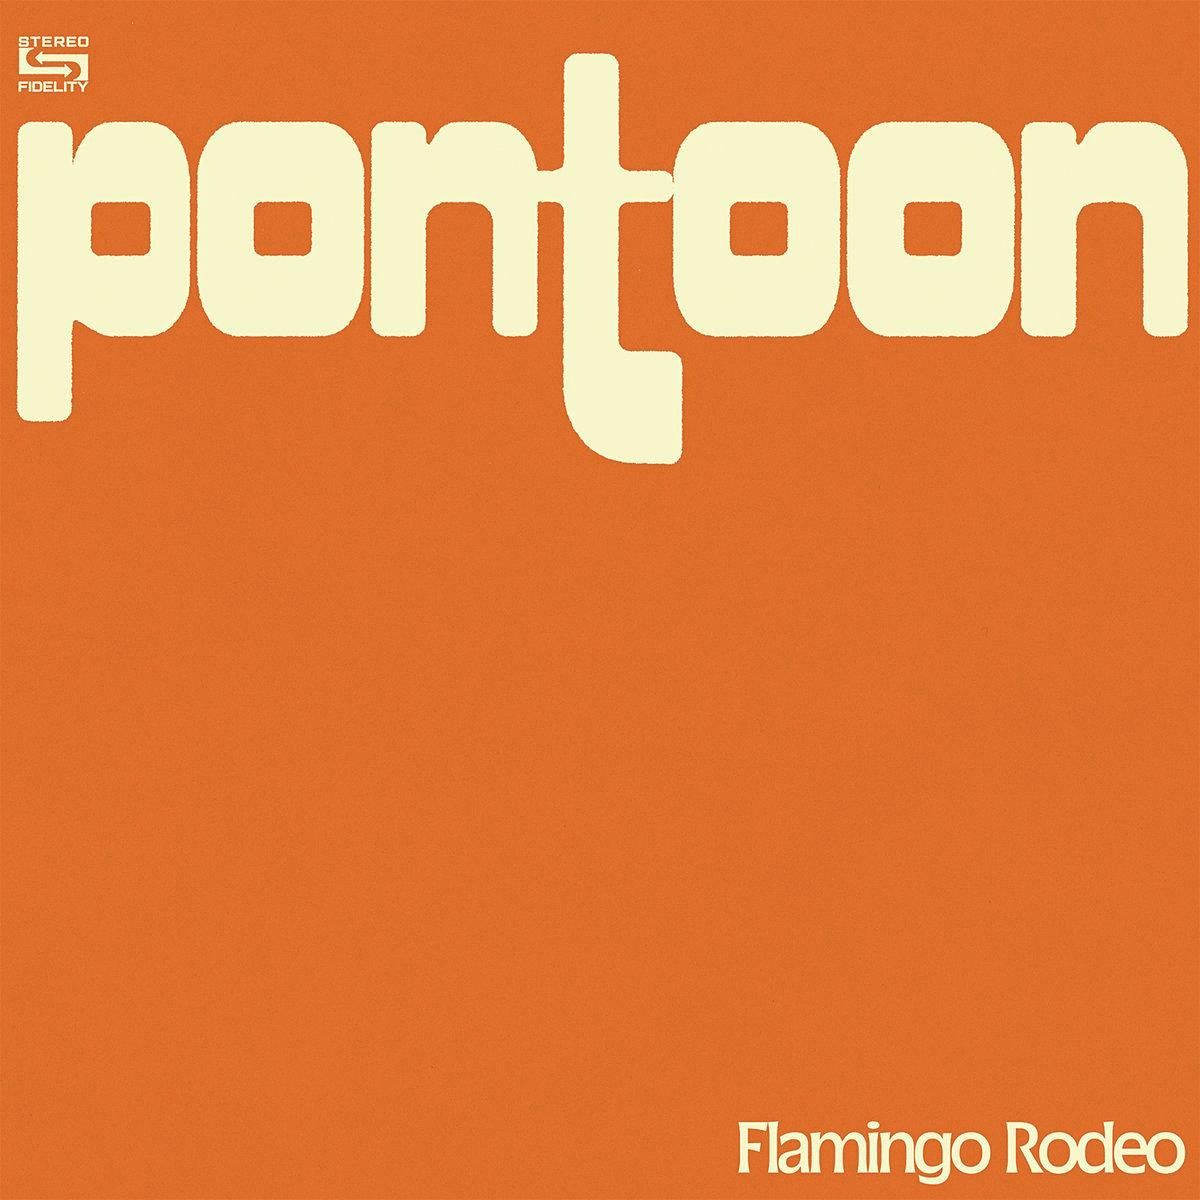 Flamingo Rodeo's second album 'PONTOON': A Listening